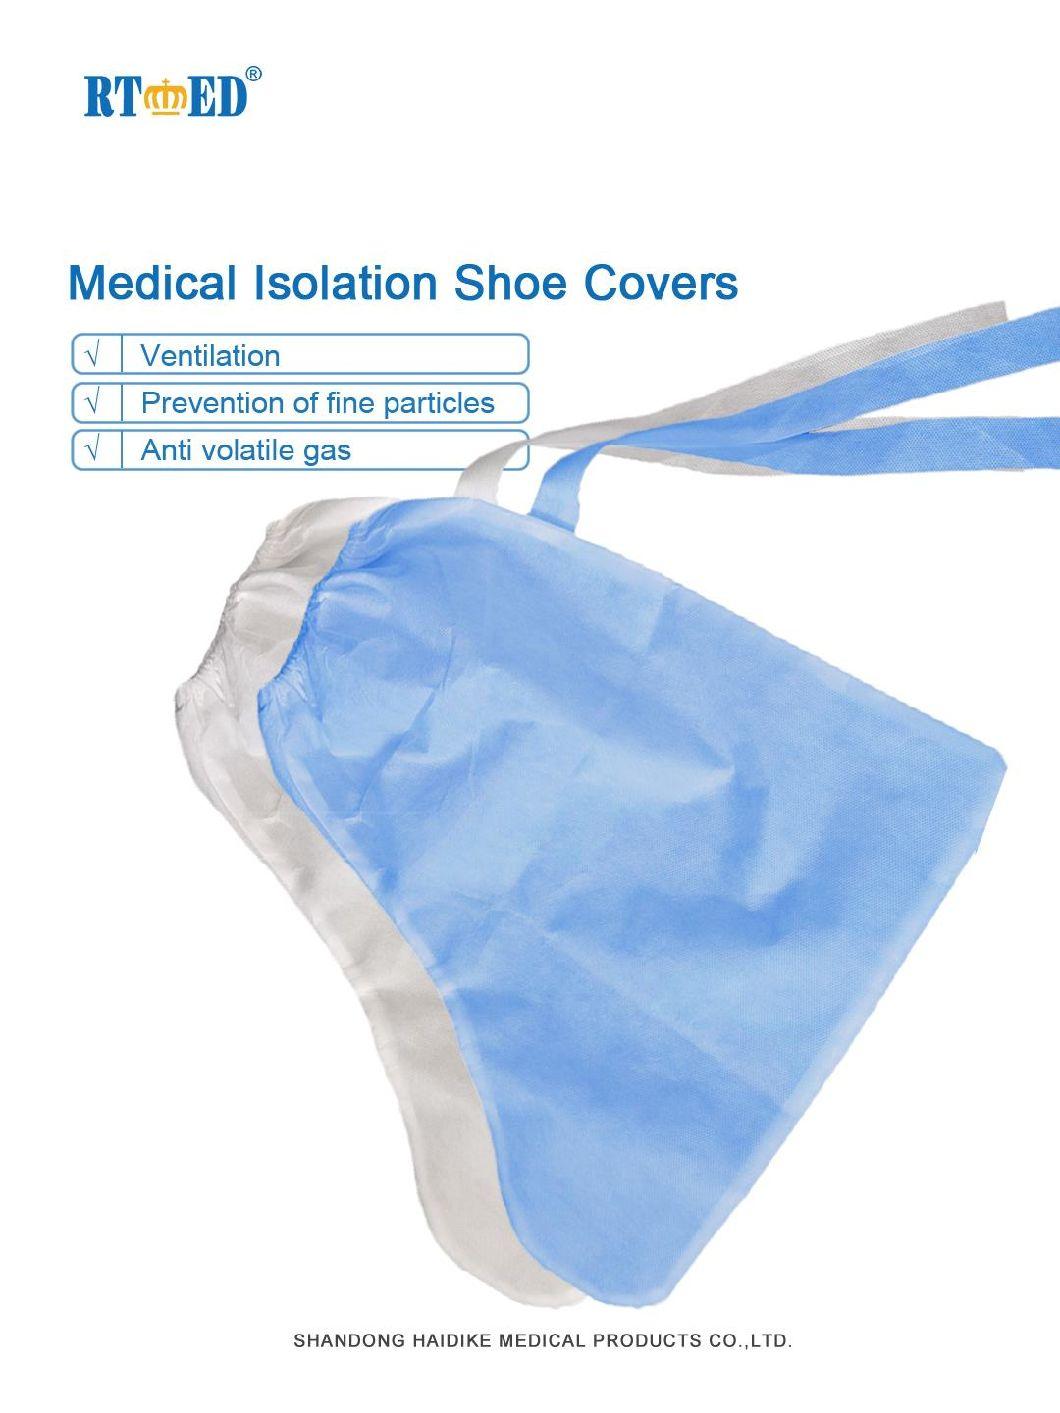 Shangdong Haidike Medical Isolation Shoecover of Long-Style 35cm Non-Slip